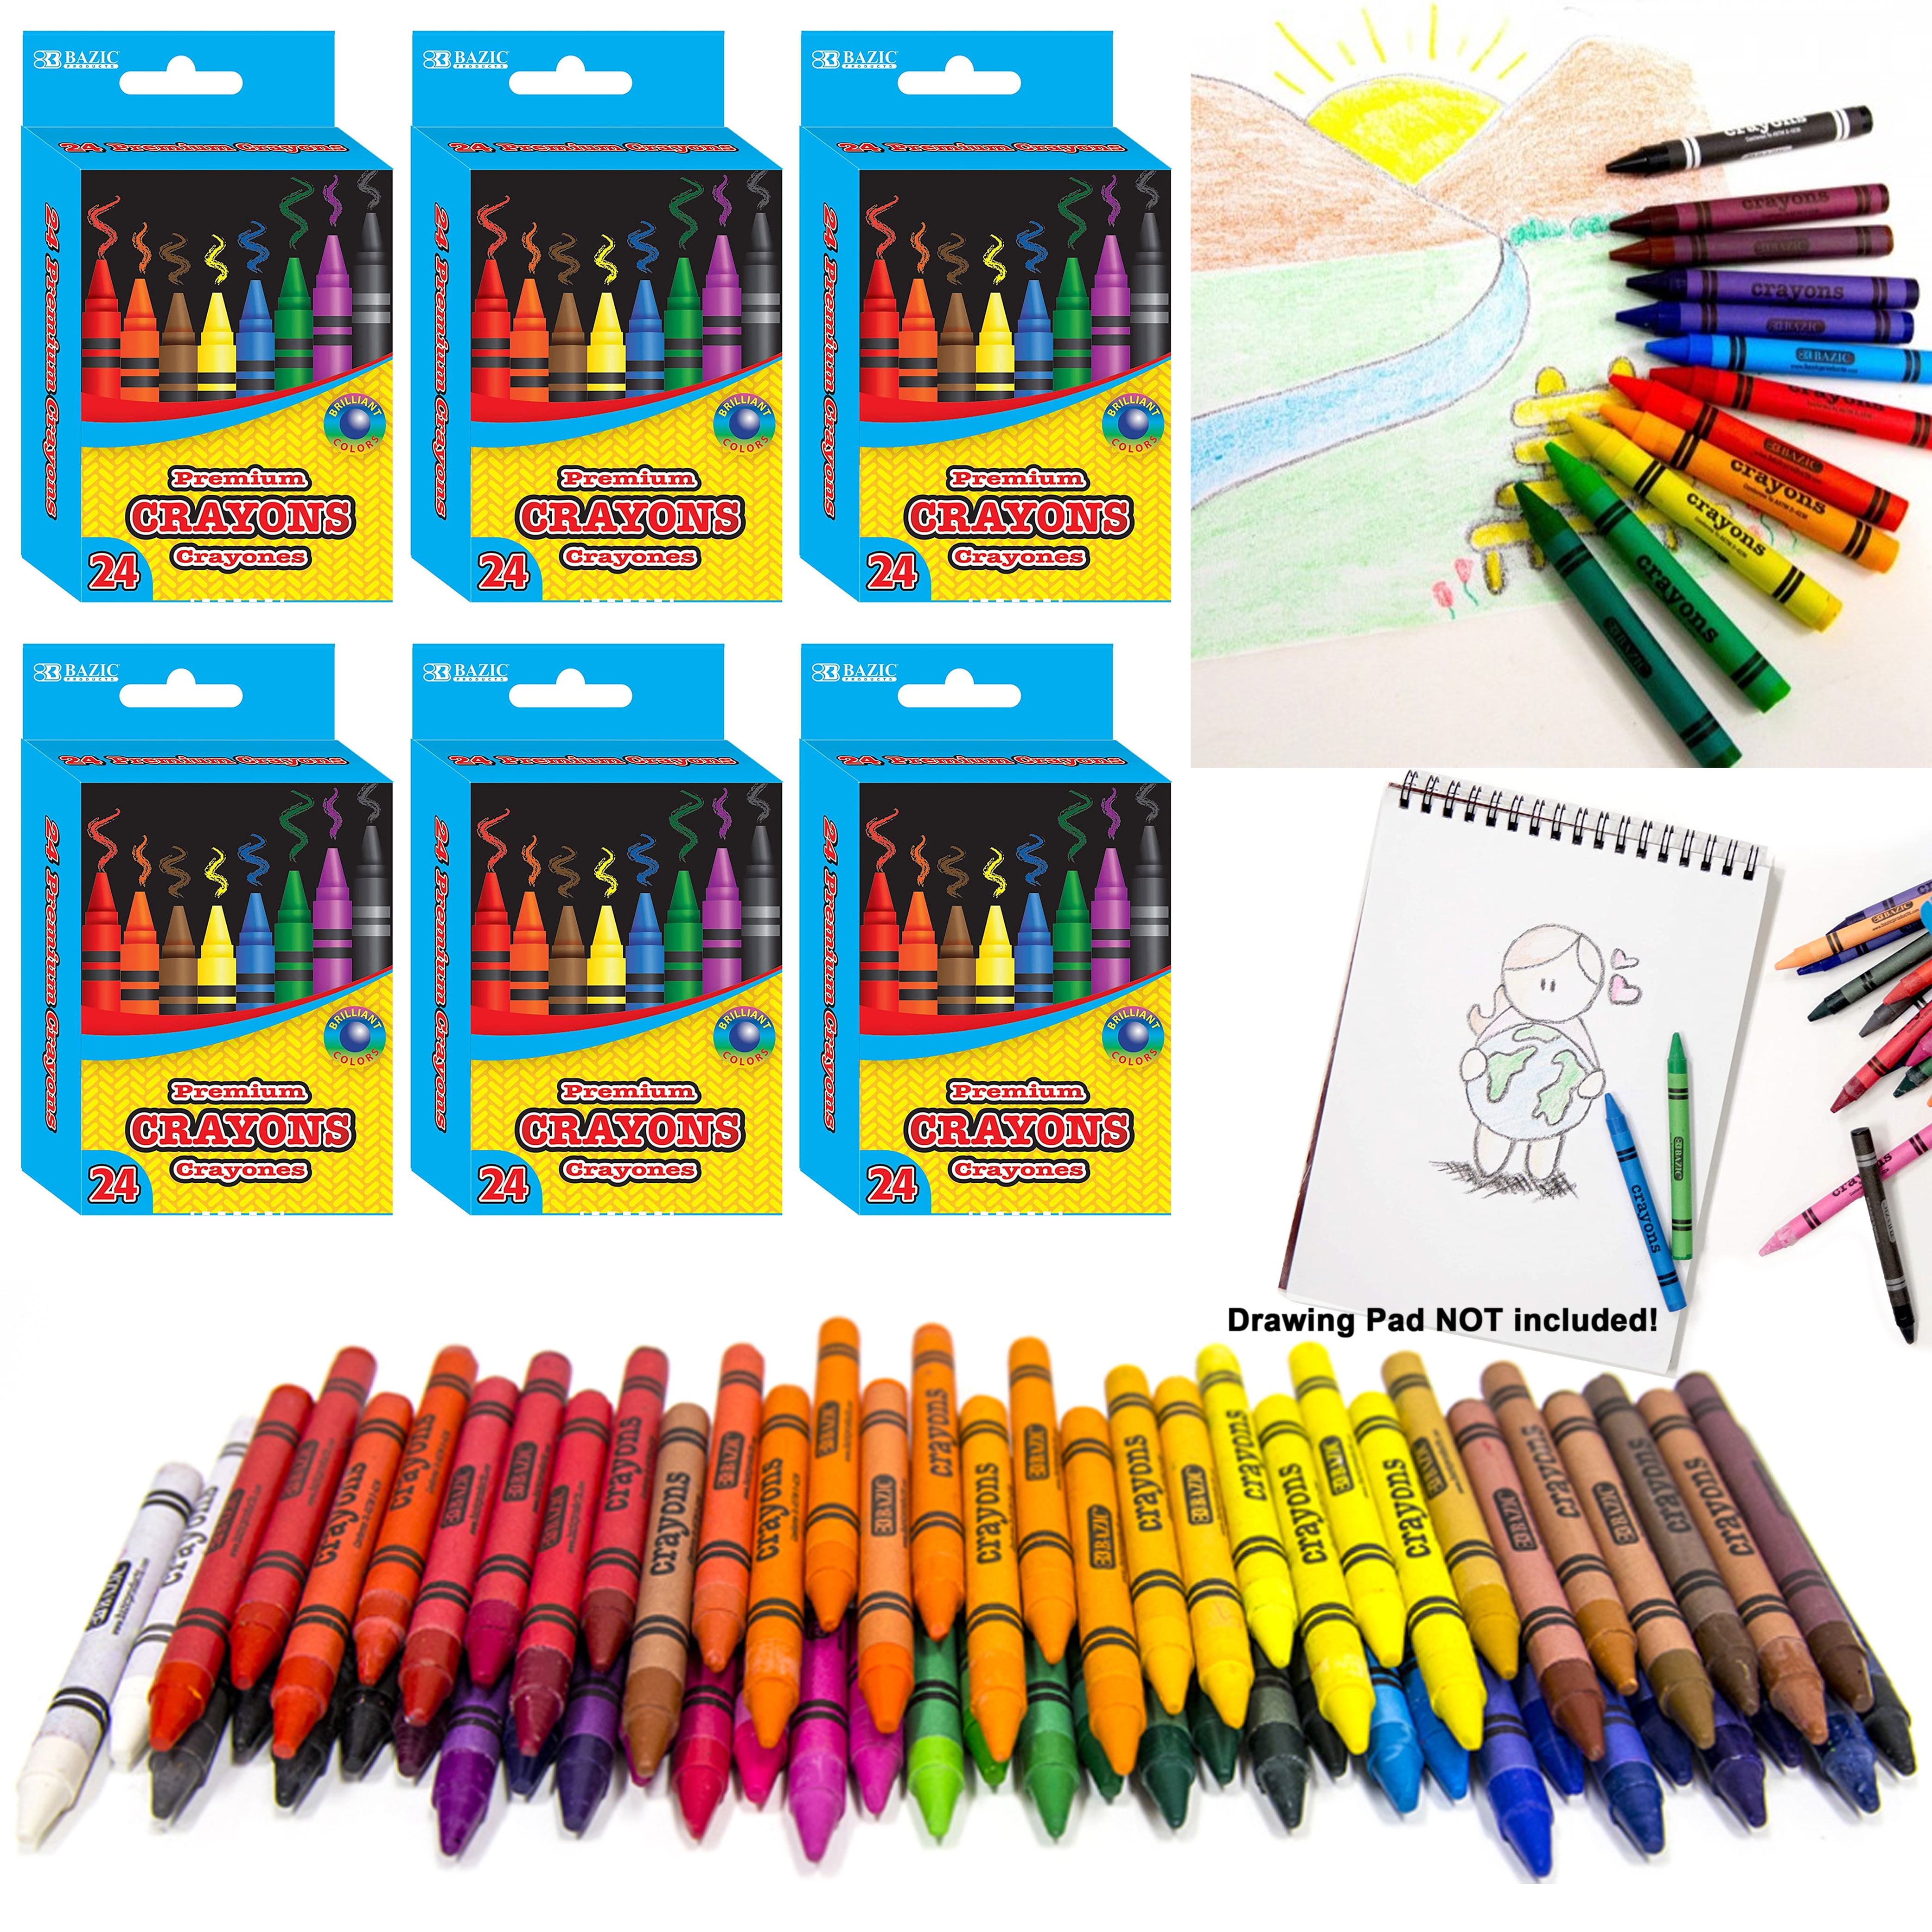 Buy Happykids Children's Crayons Easy to paint, unbreakable, water